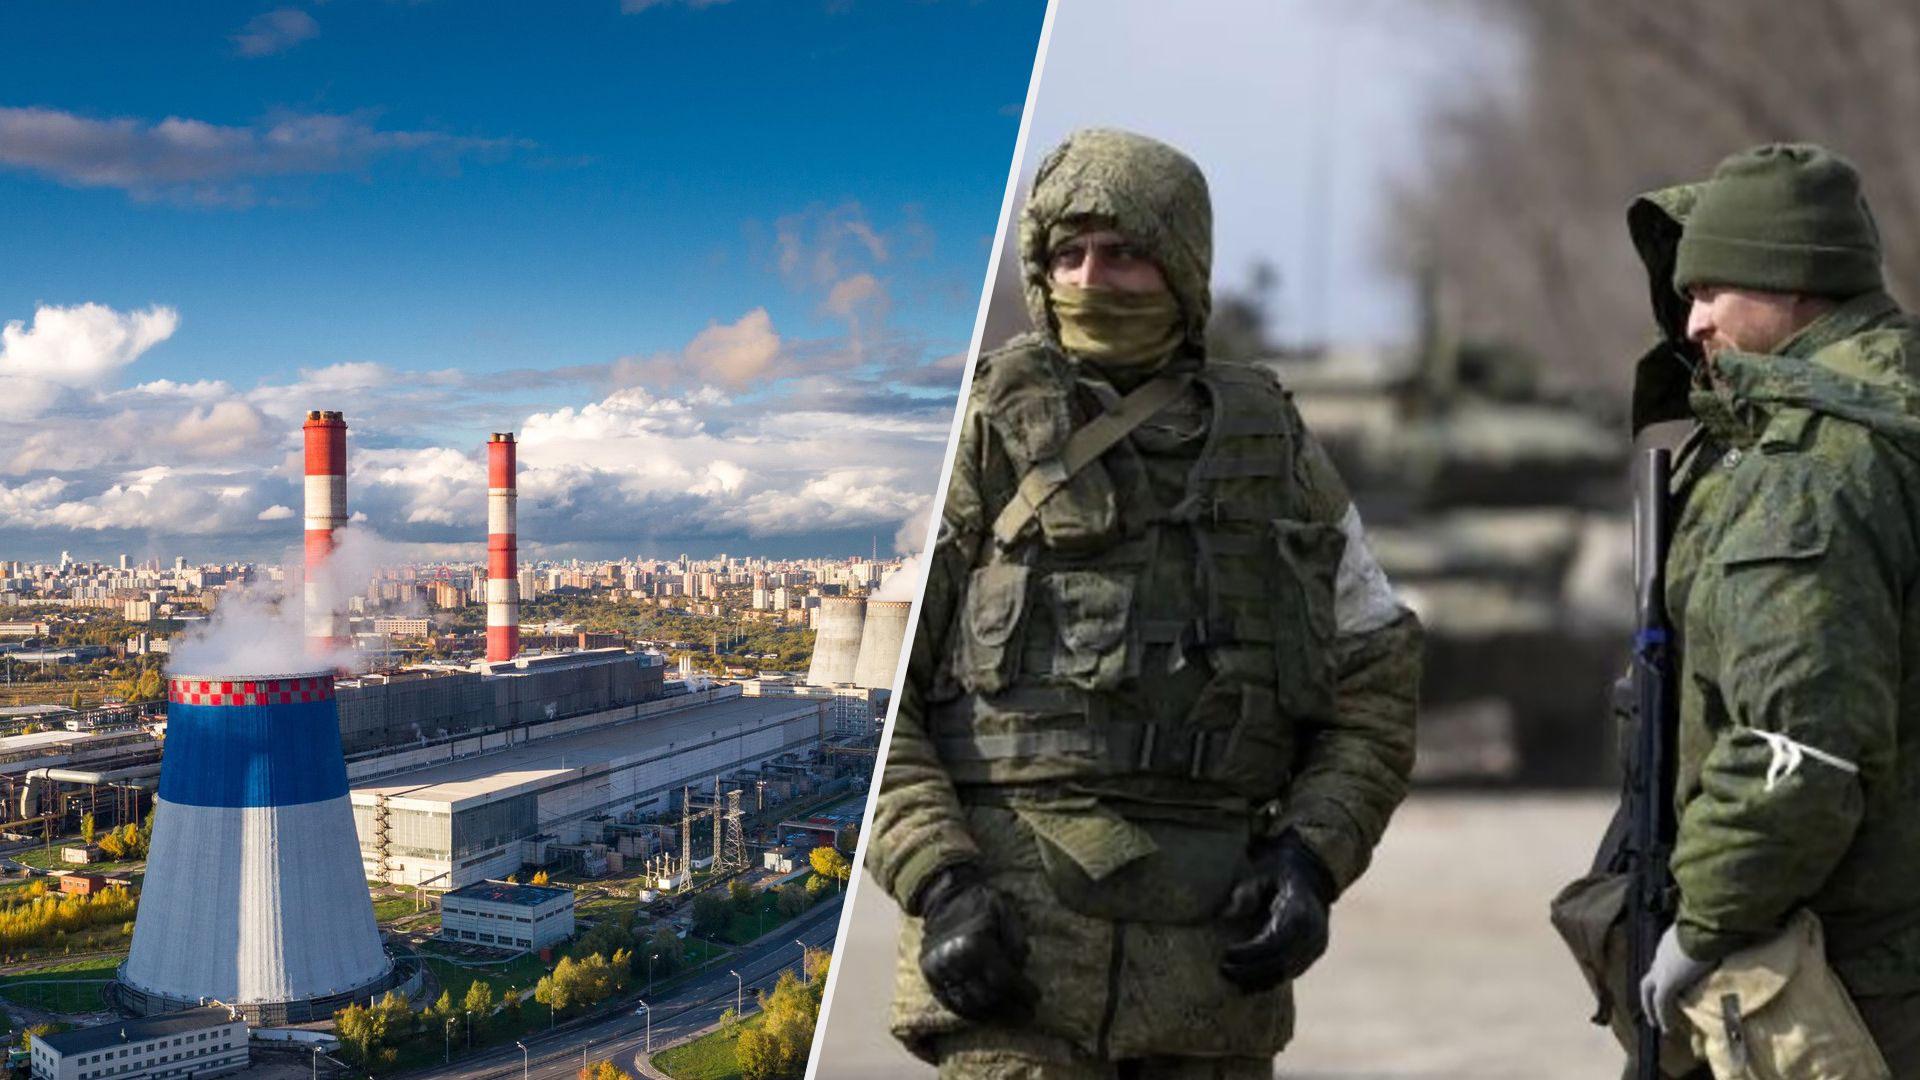 Возле ТЭЦ-20 в Москве обнаружили снаряд 24 марта 2023 года - все, что известно